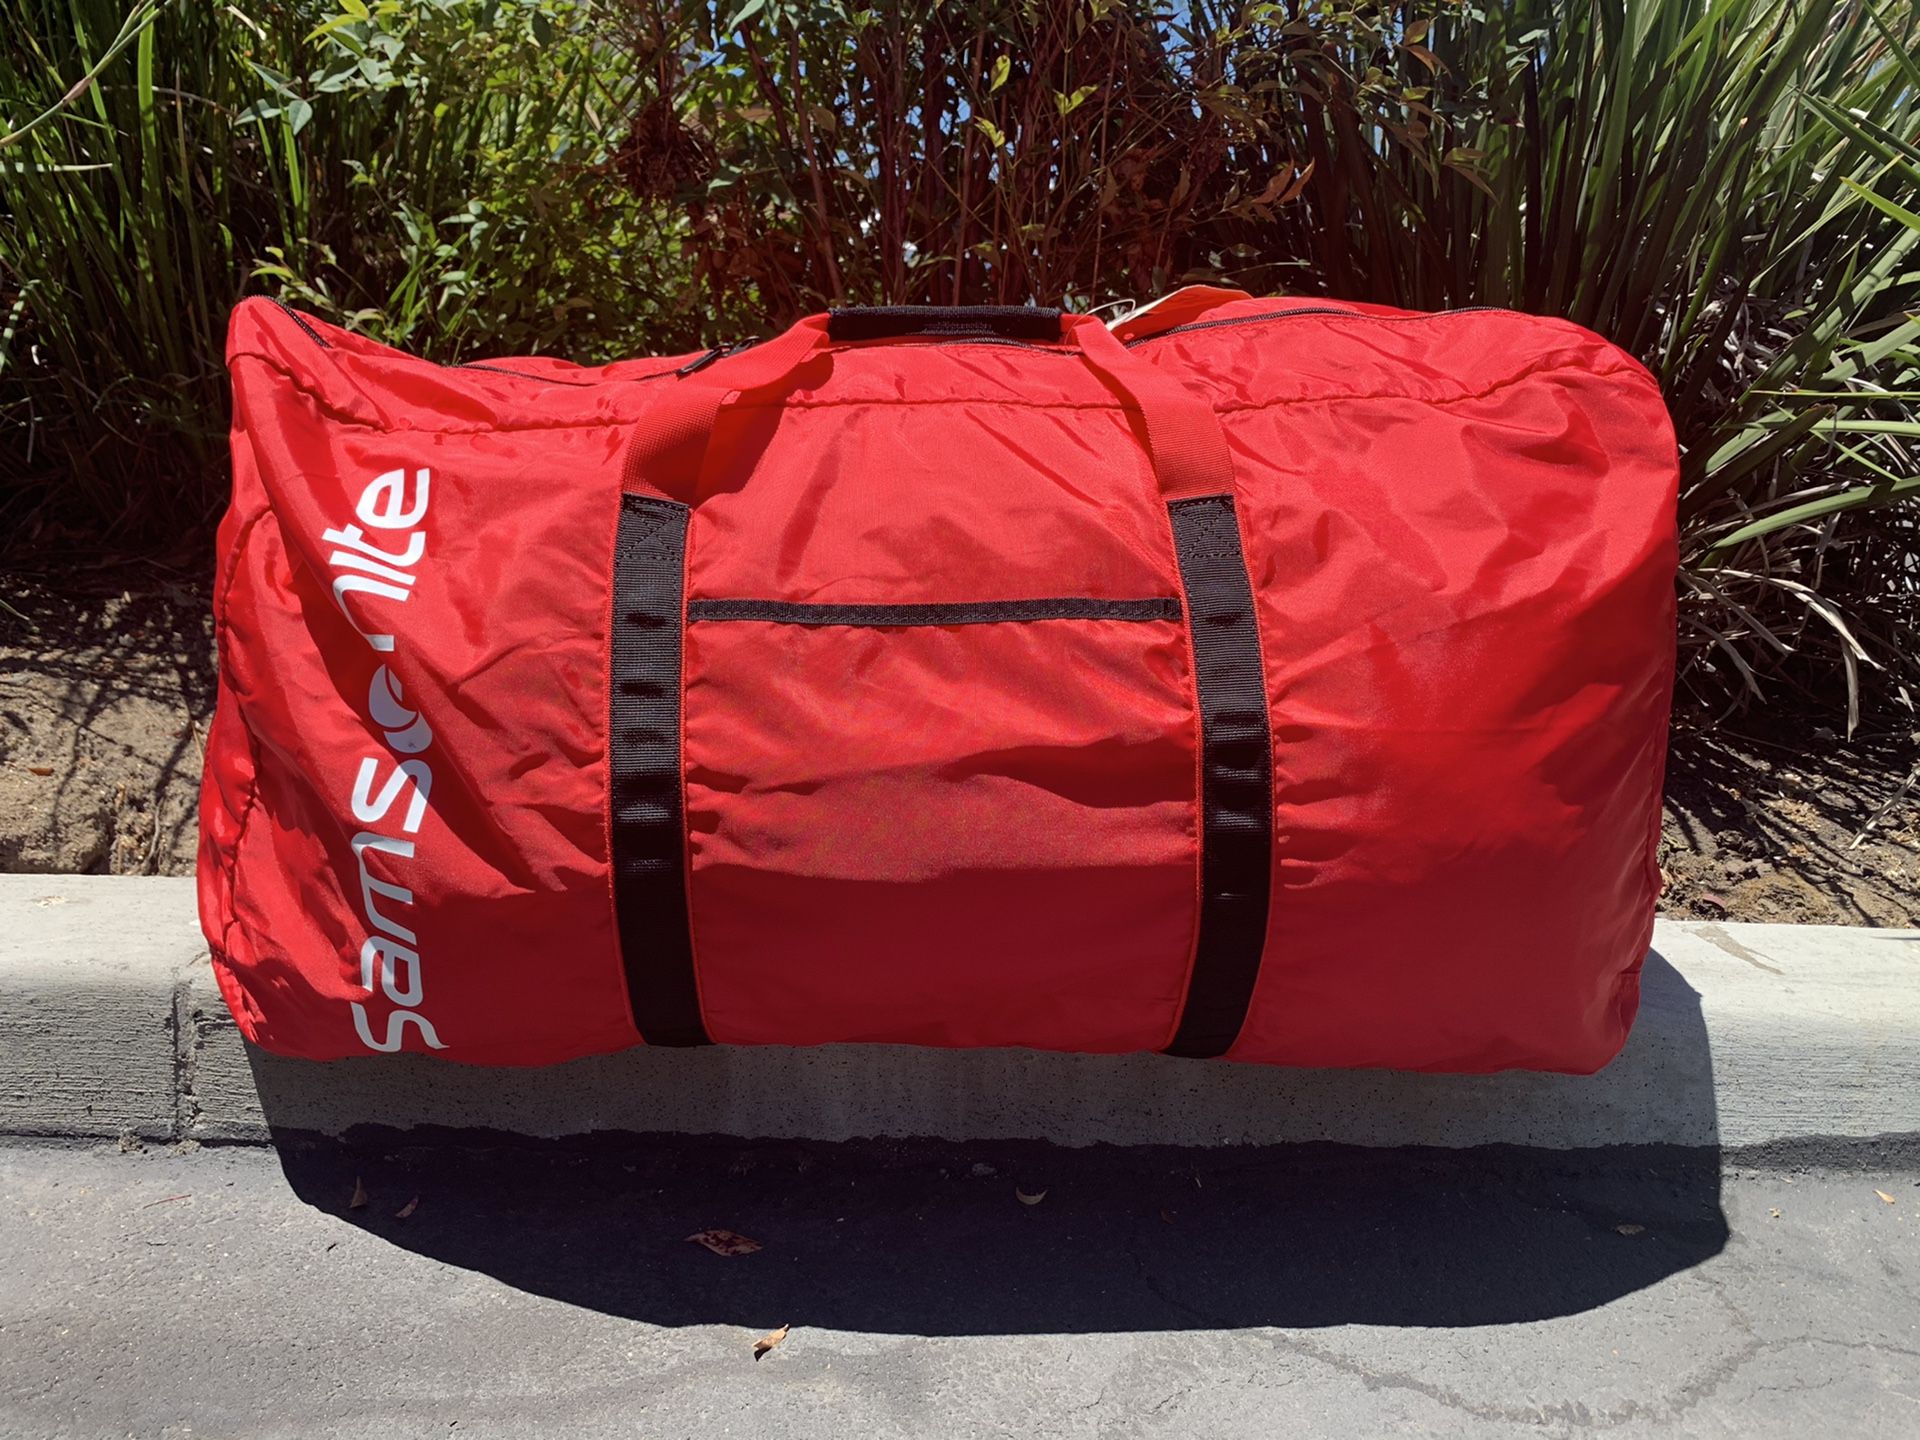 30” large samsonite duffle bag red packable